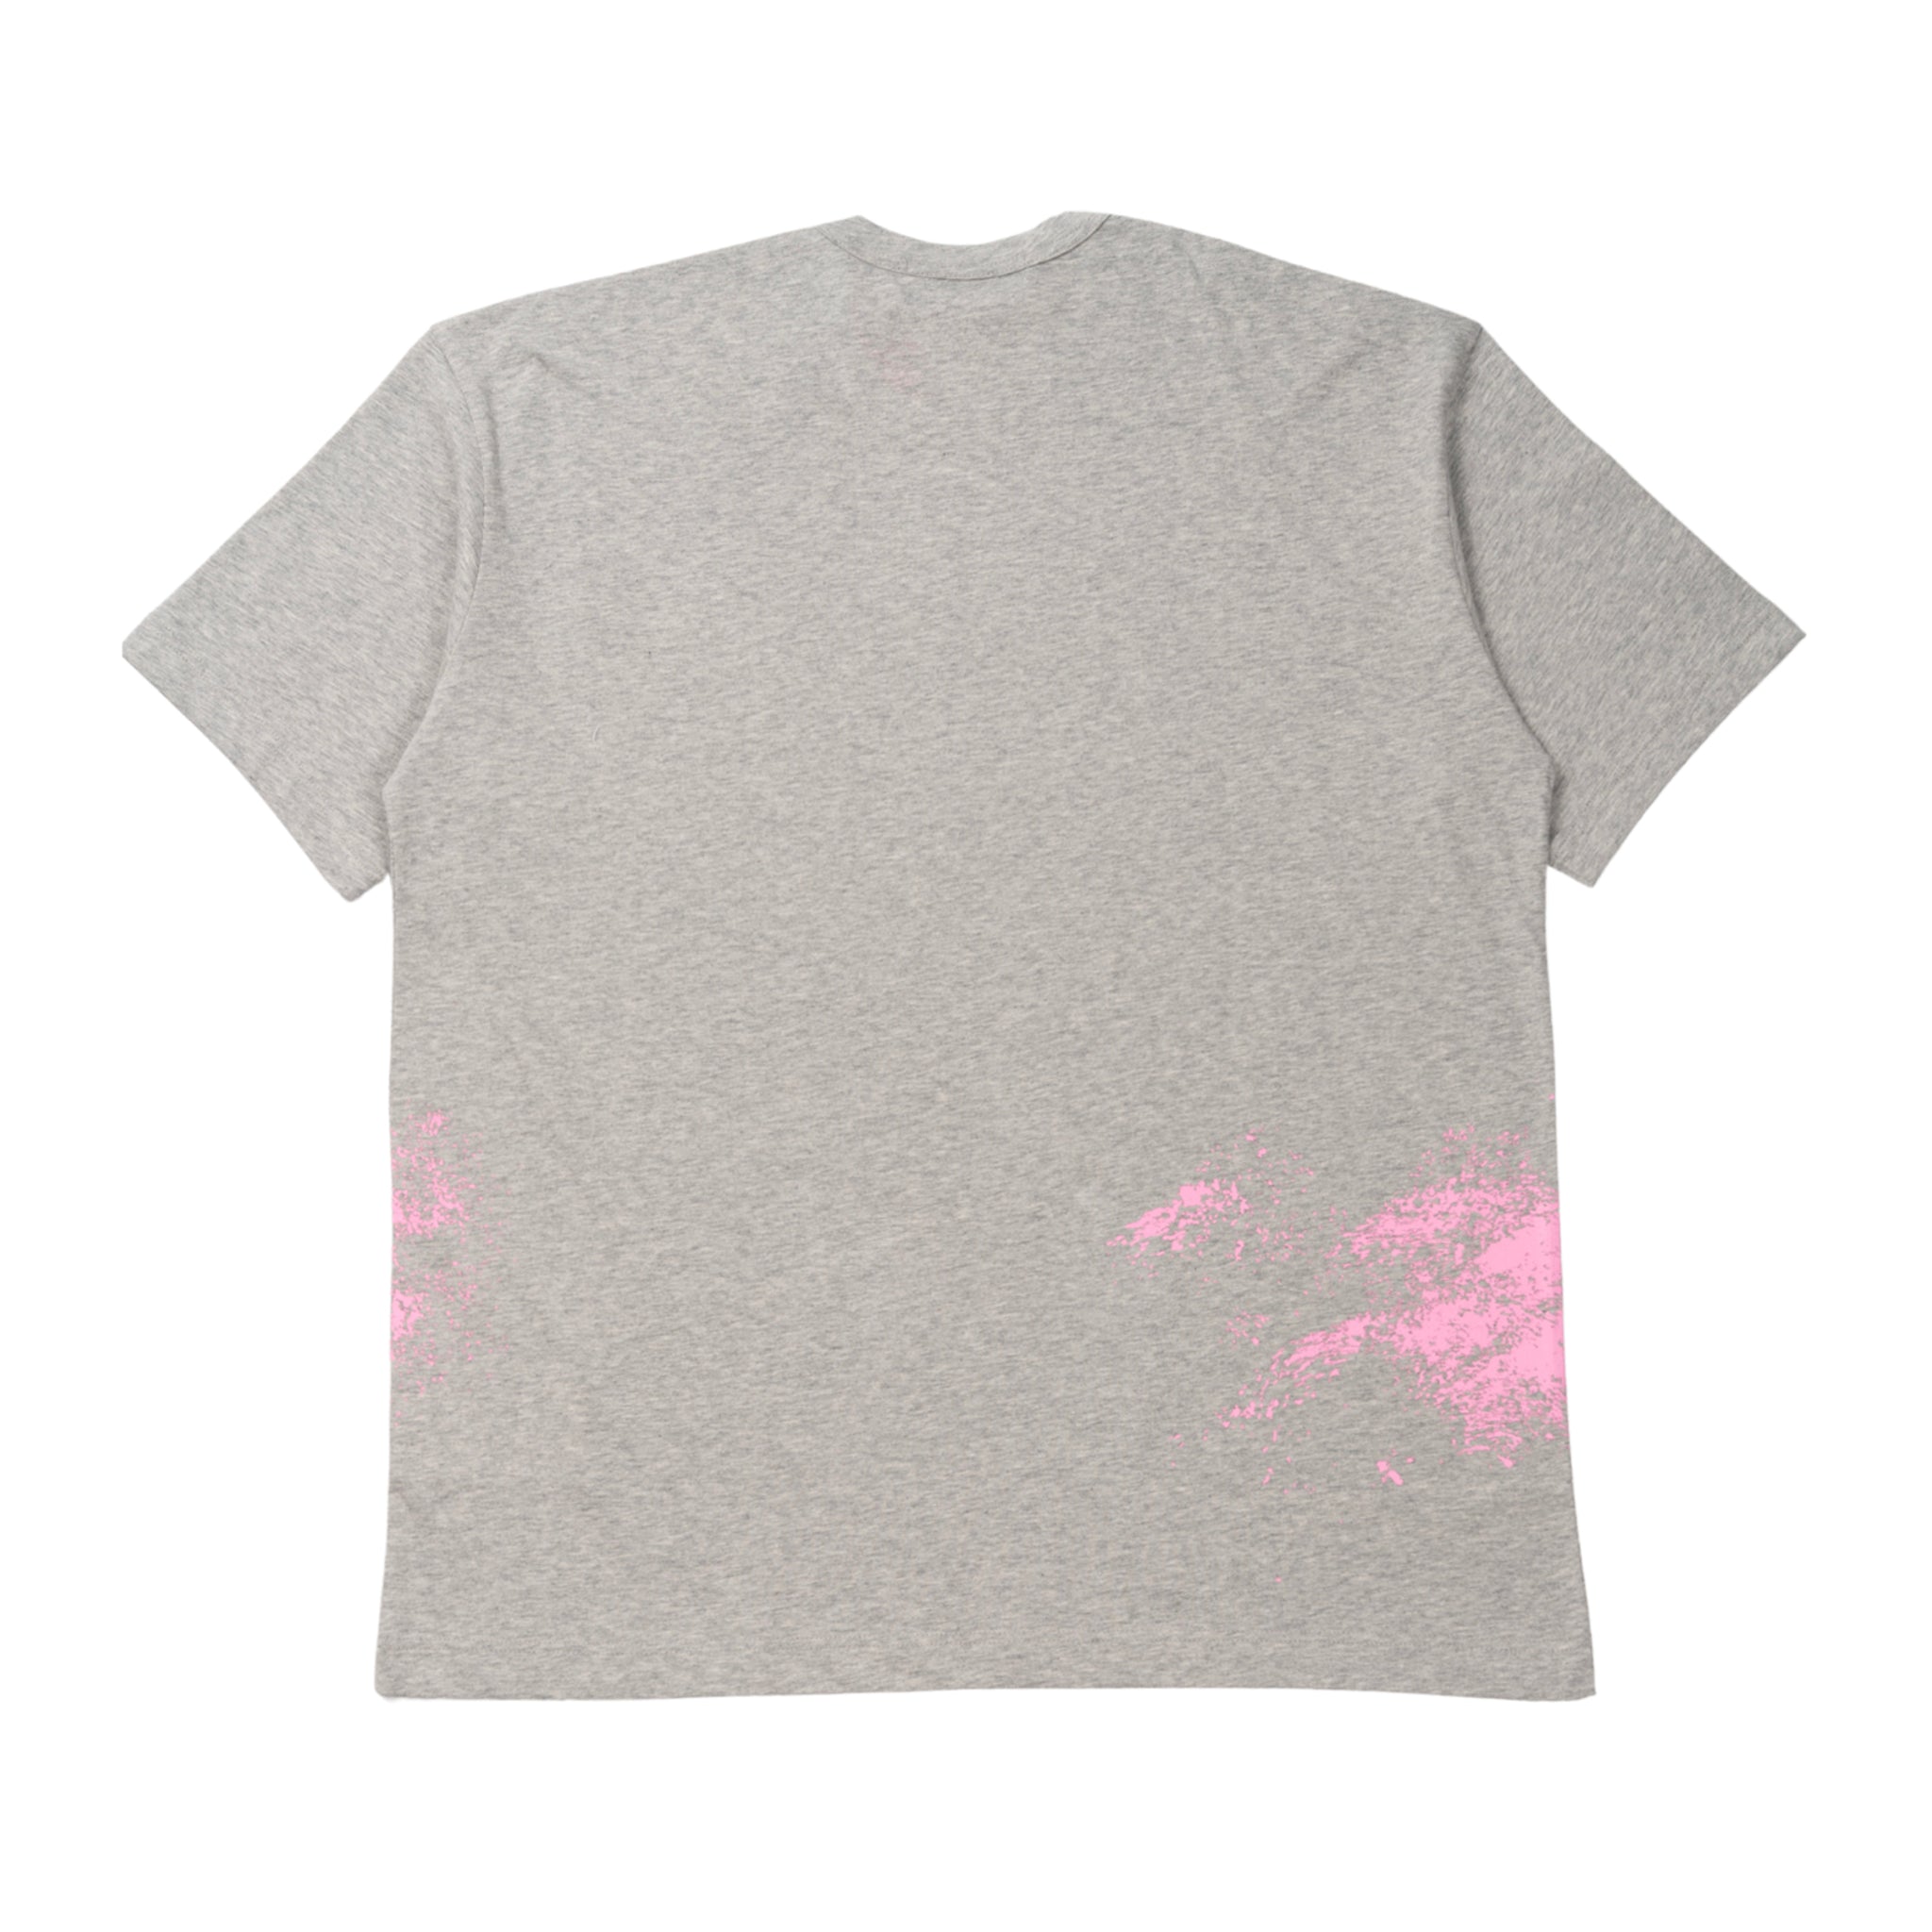 T-shirt in grigio con grafica splash fatta a mano